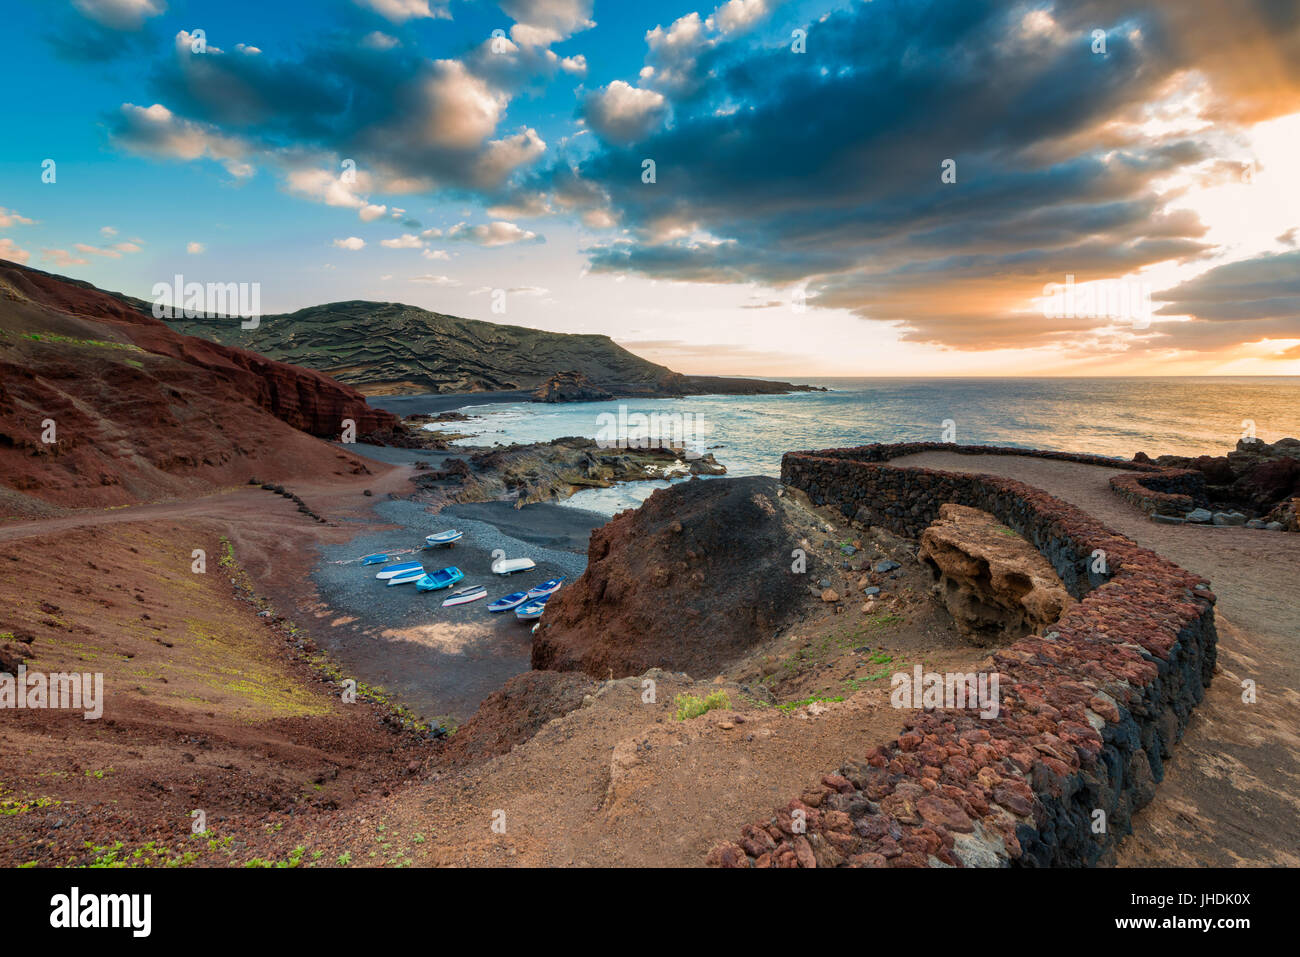 El Golfo, Lanzarote, îles Canaries, Espagne au coucher du soleil Banque D'Images